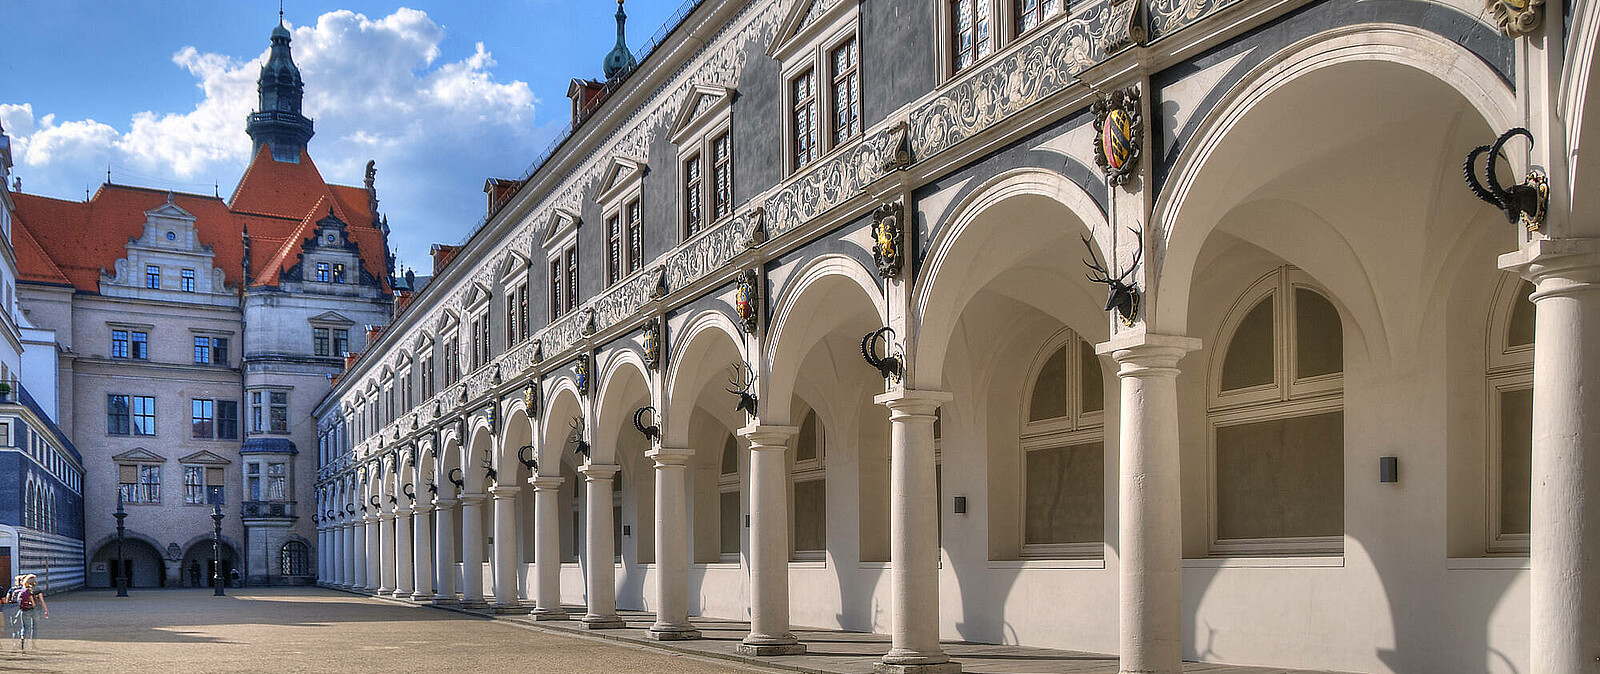 Der Stallhof gehört mit zum Ensemble des neu aufgebauten Residenzschlosses Dresden. Hier finden die Besucher auch das Historische Grüne Gewölbe inmitten der Dresnder Altstadt.